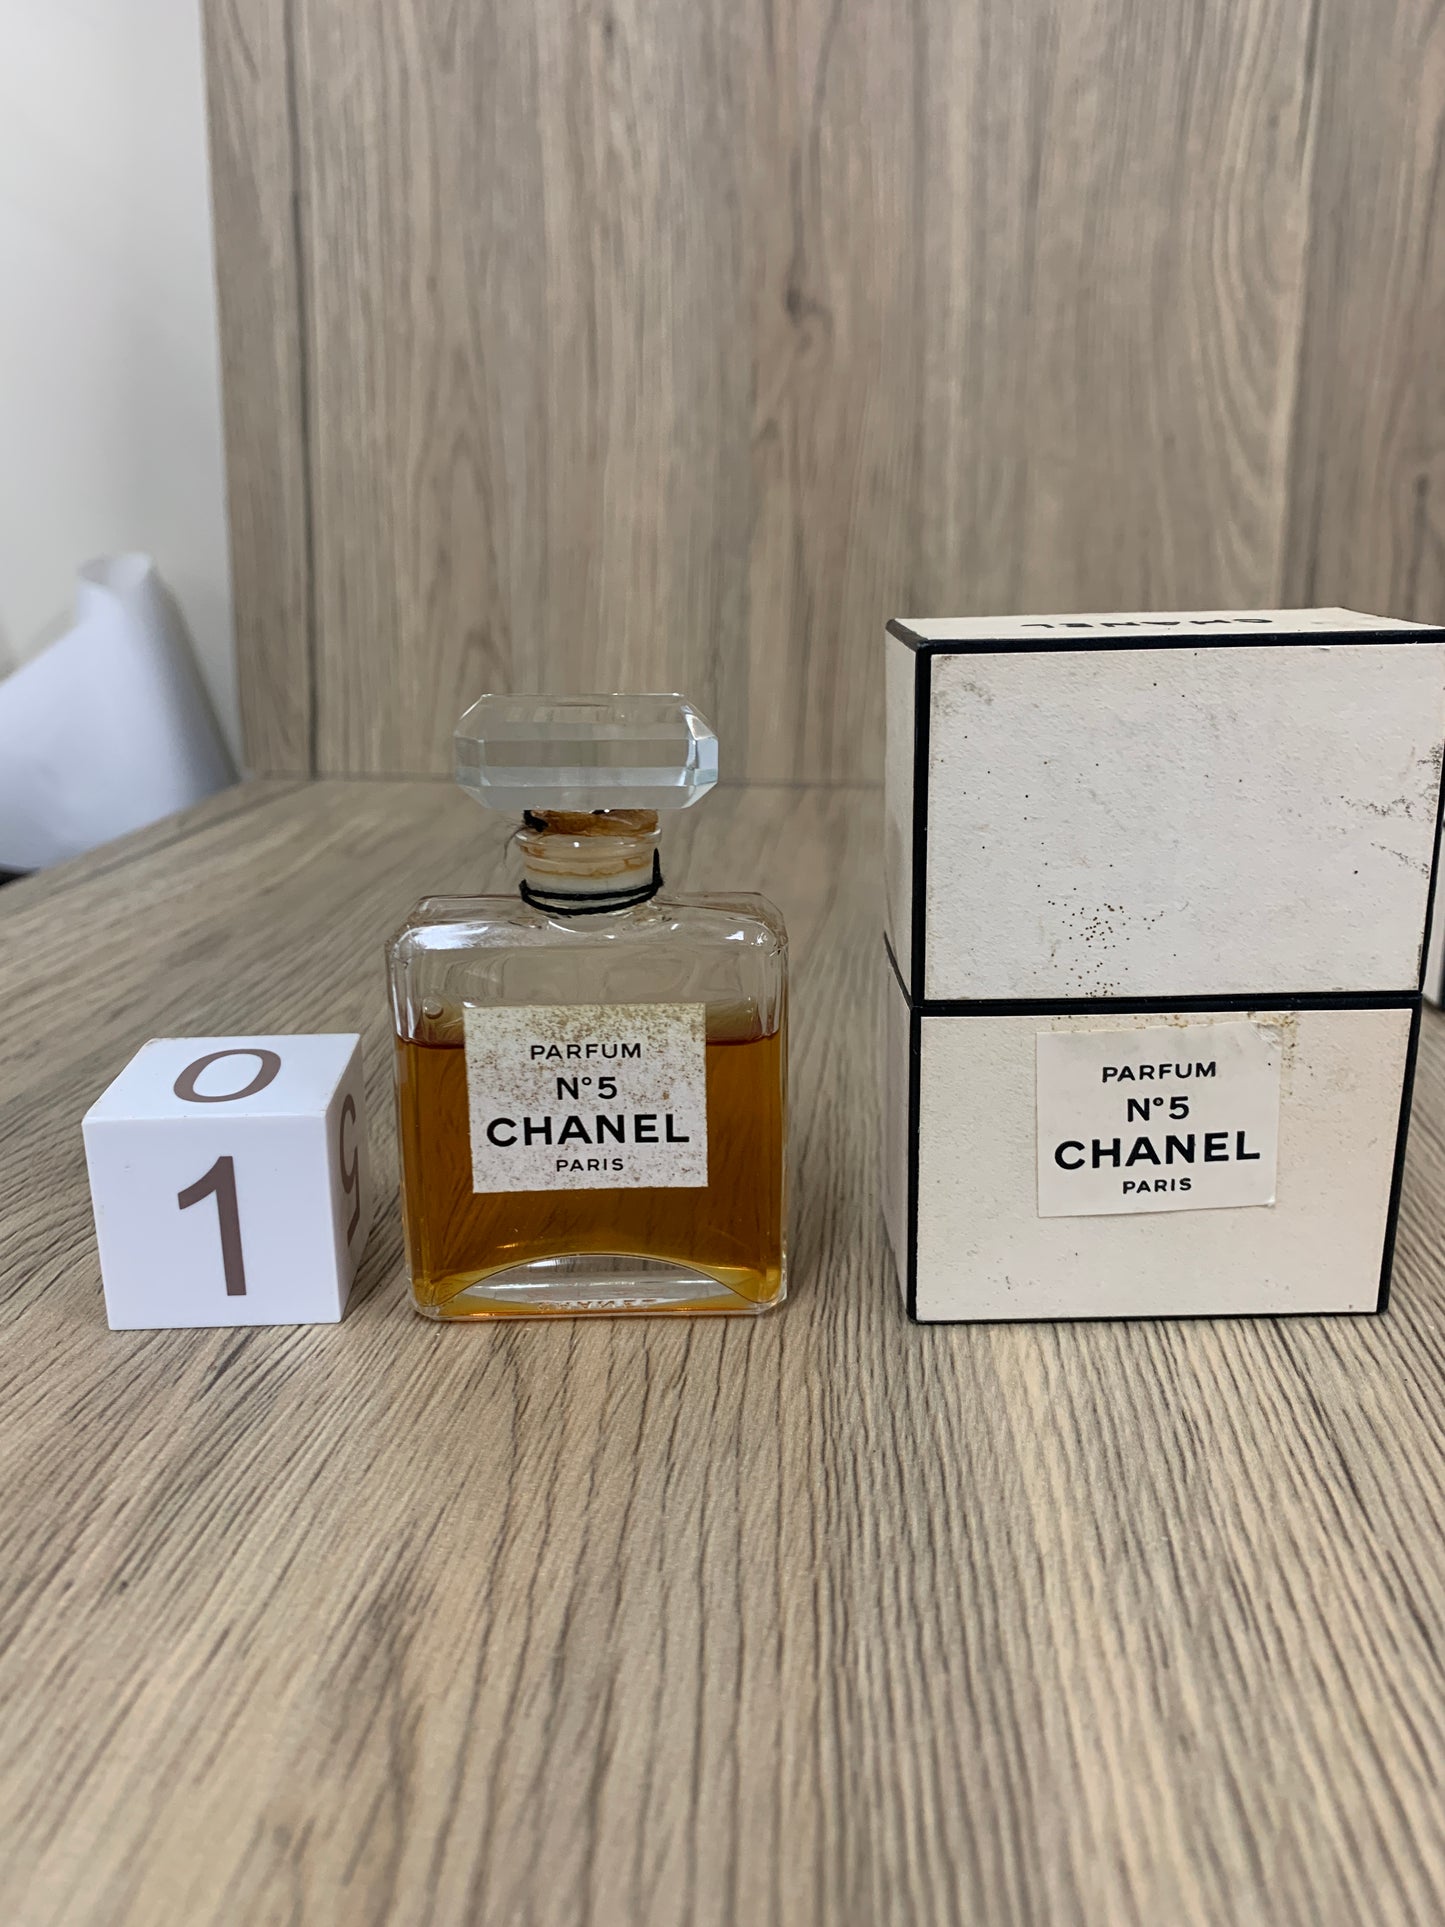 Vintage Chanel Paris No 5 Extrait Eau de Perfume 28ml